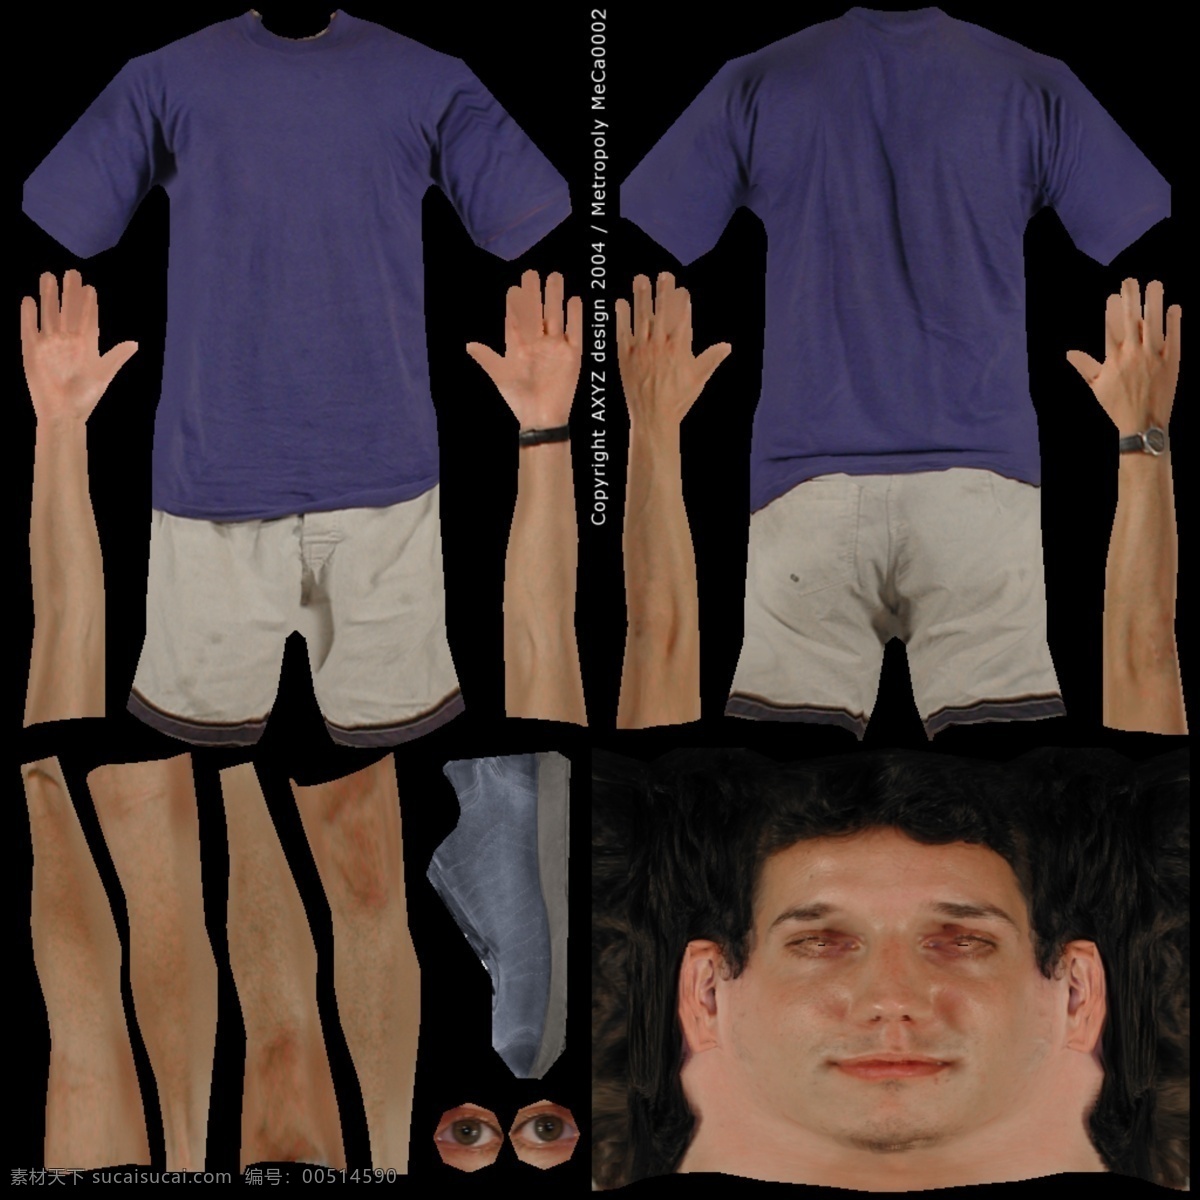 人物 男性 3d 模型 人物模型素材 3d人物模型 男人模型素材 3d人体效果 模型免费下载 3d模型素材 其他3d模型